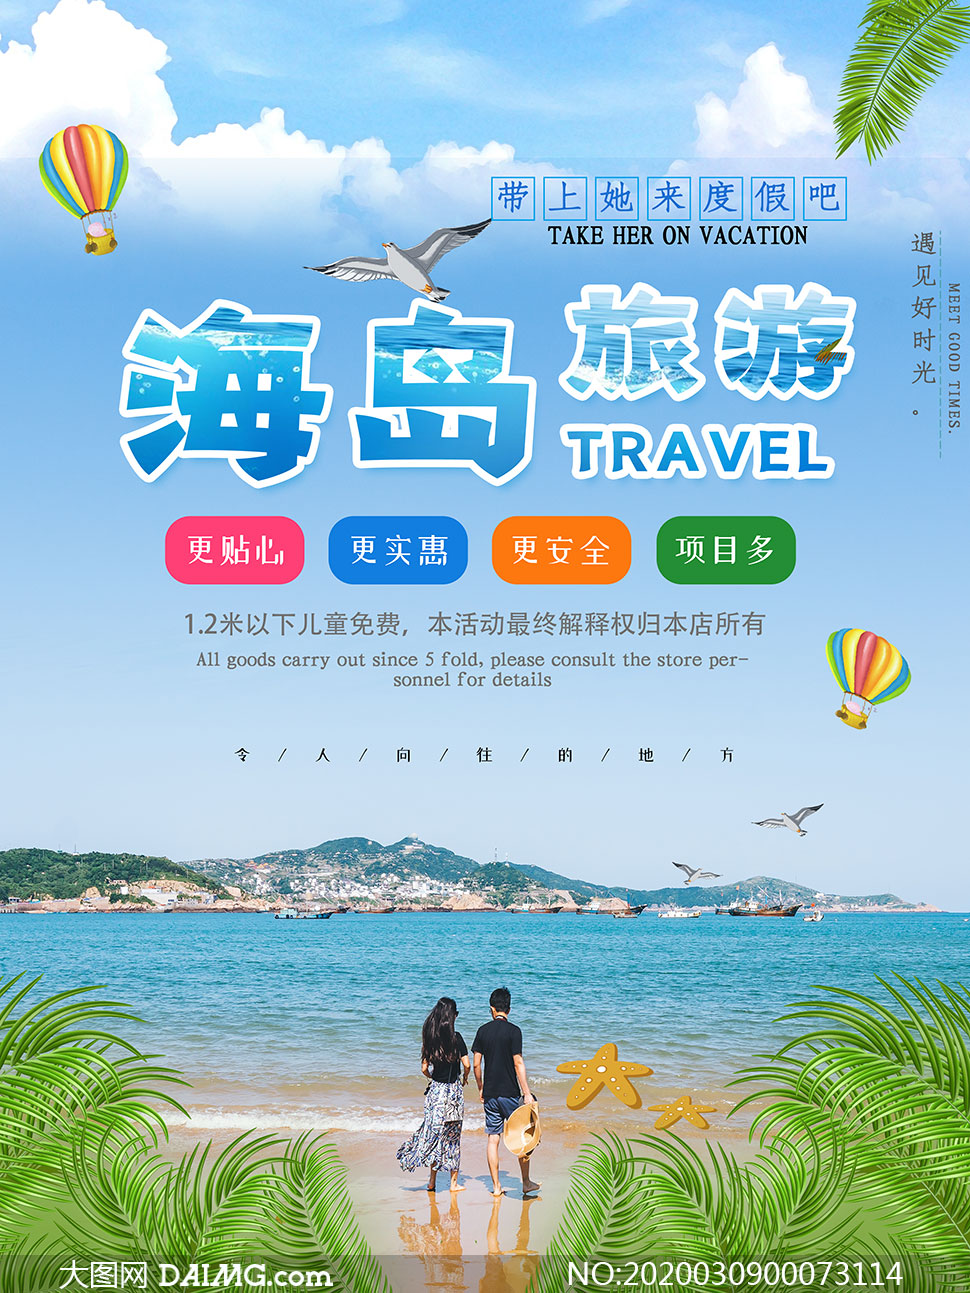 海岛旅游宣传海报设计psd素材